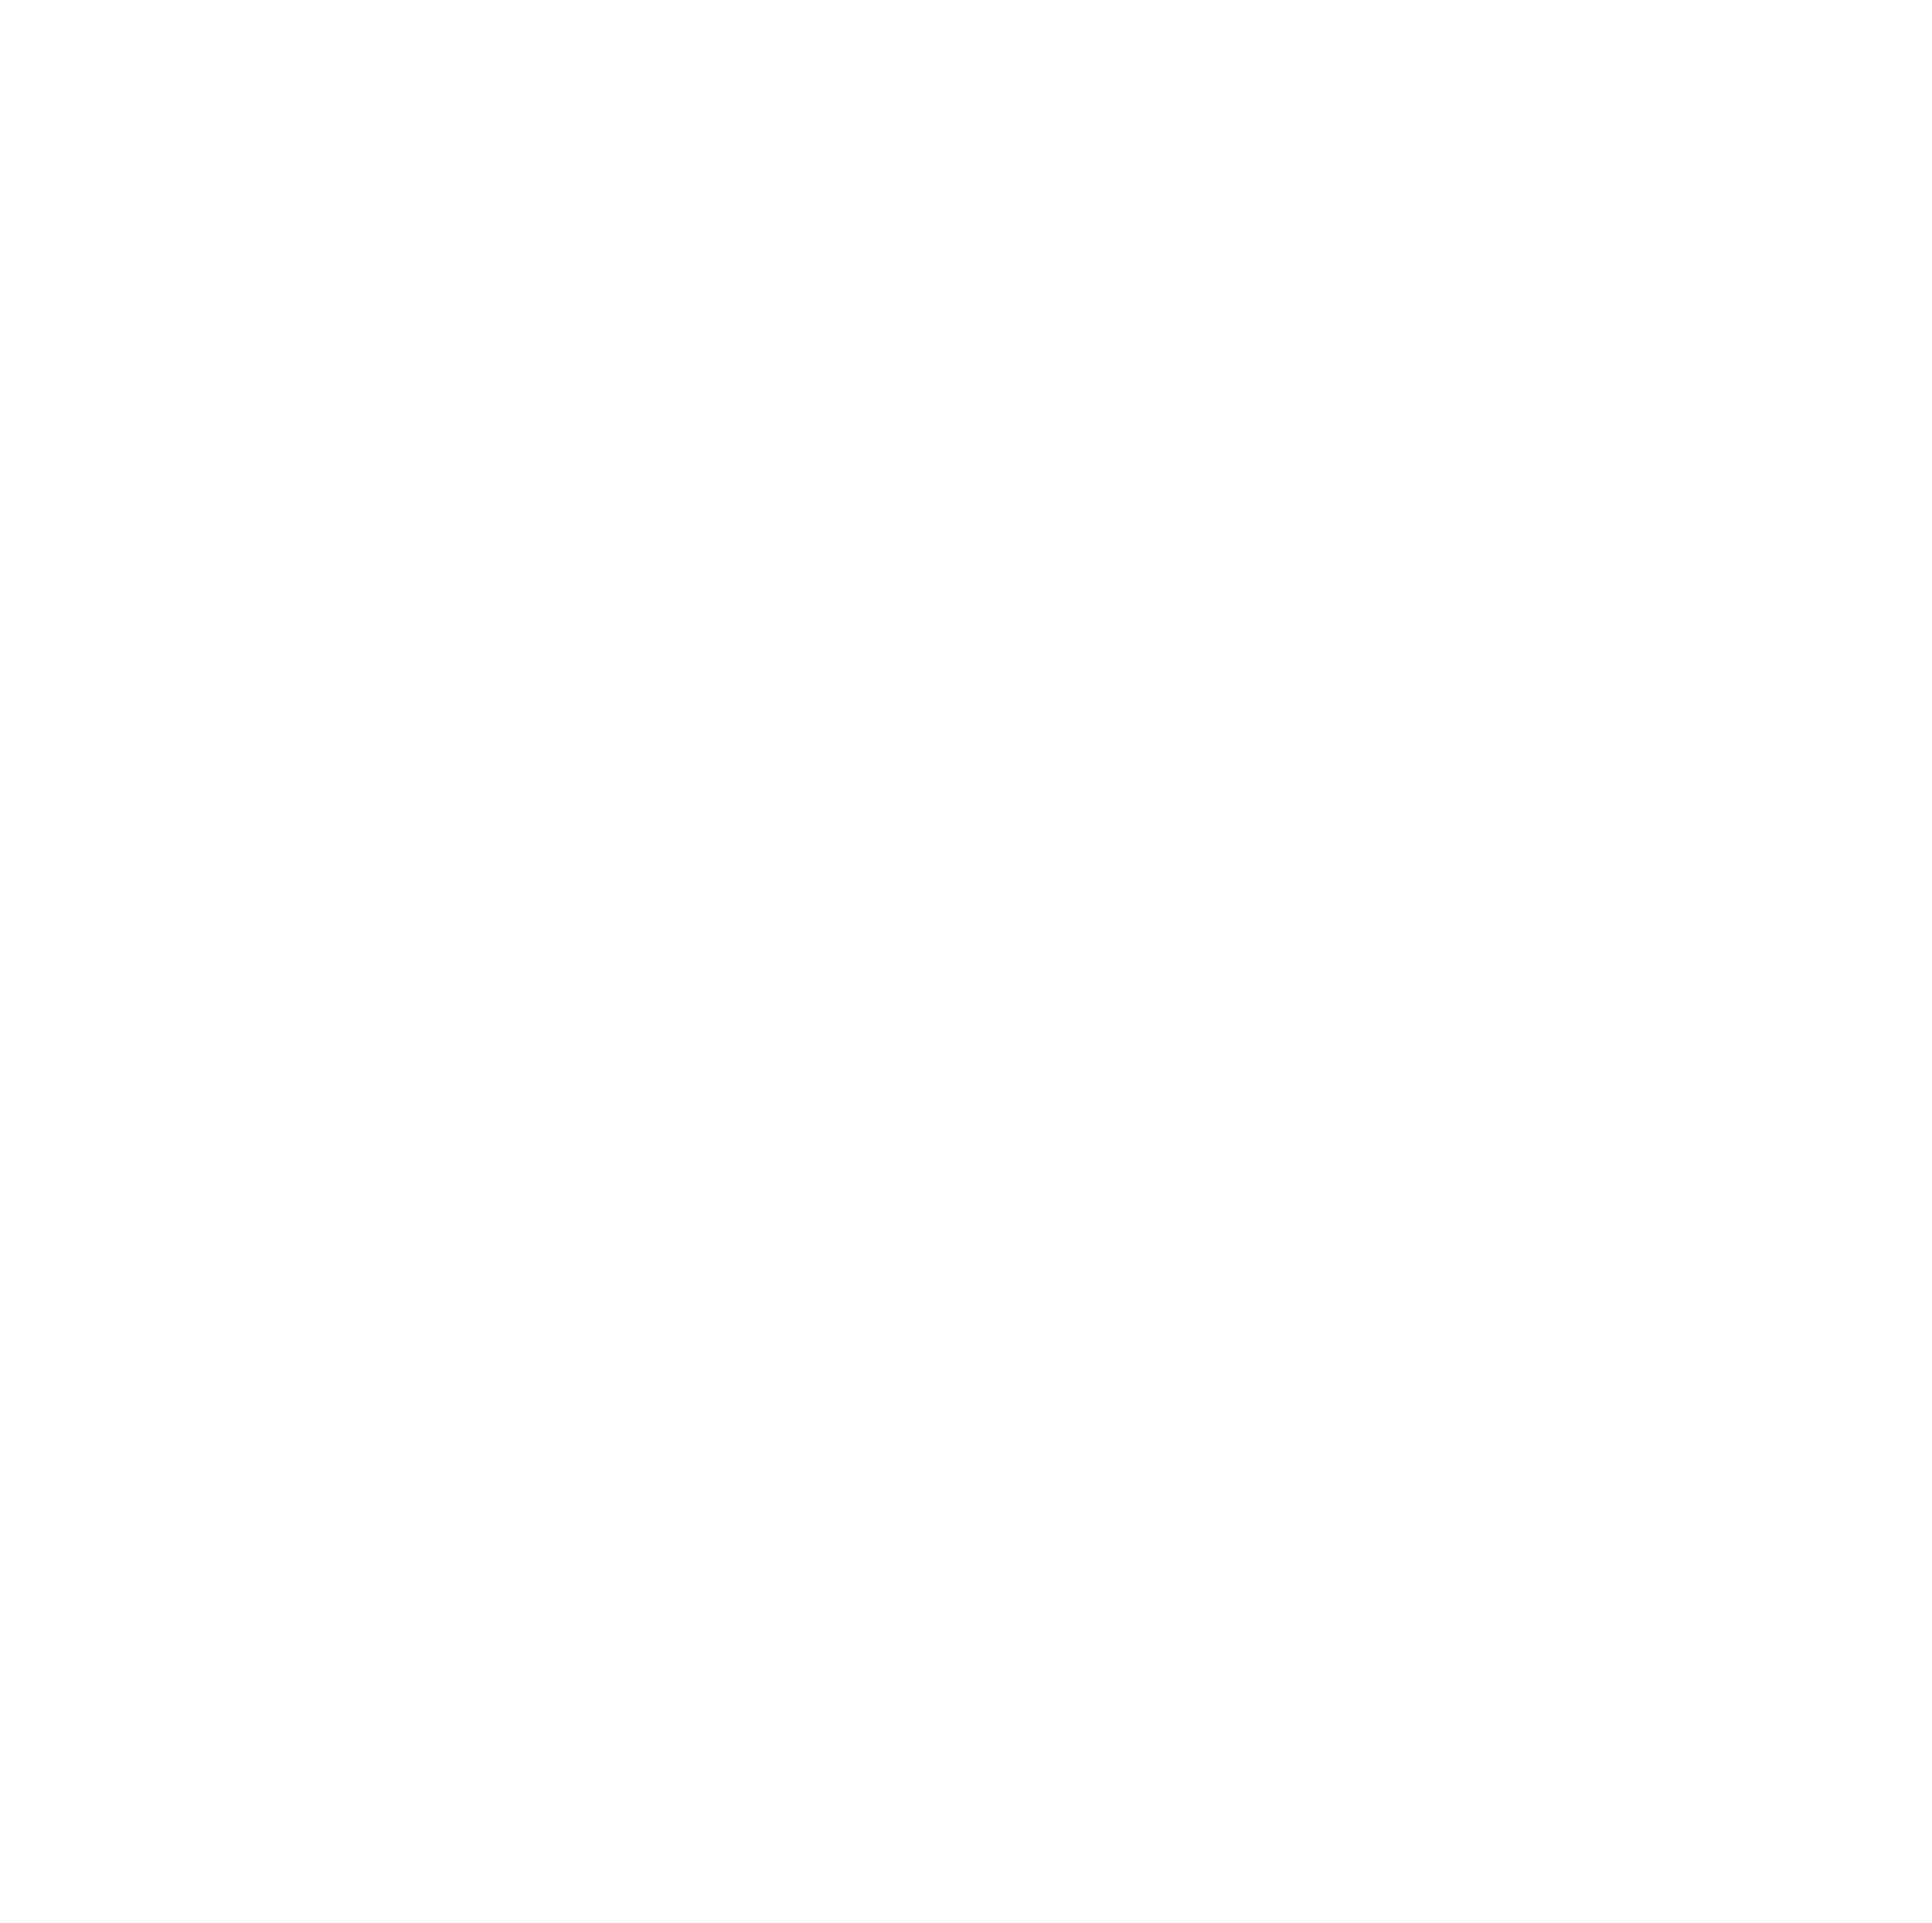 sticky logo